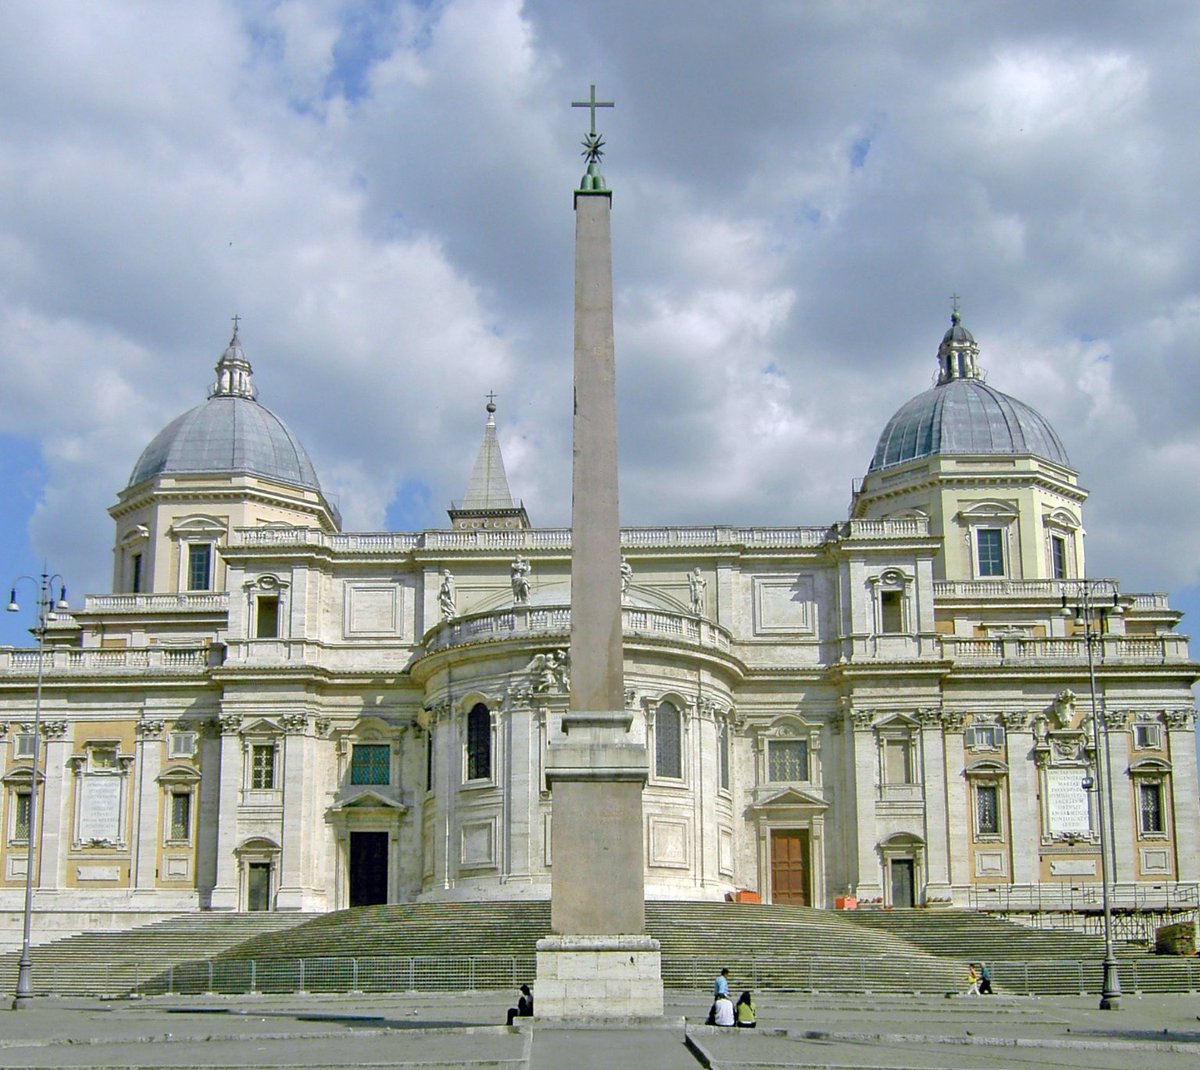 Detrás de la iglesia, veremos el obelisco esquilino. Y frente a la iglesia, la columna de la paz, coronada por la Virgen. Esa columna pertenencia a los restos de la basílica de Magencio.